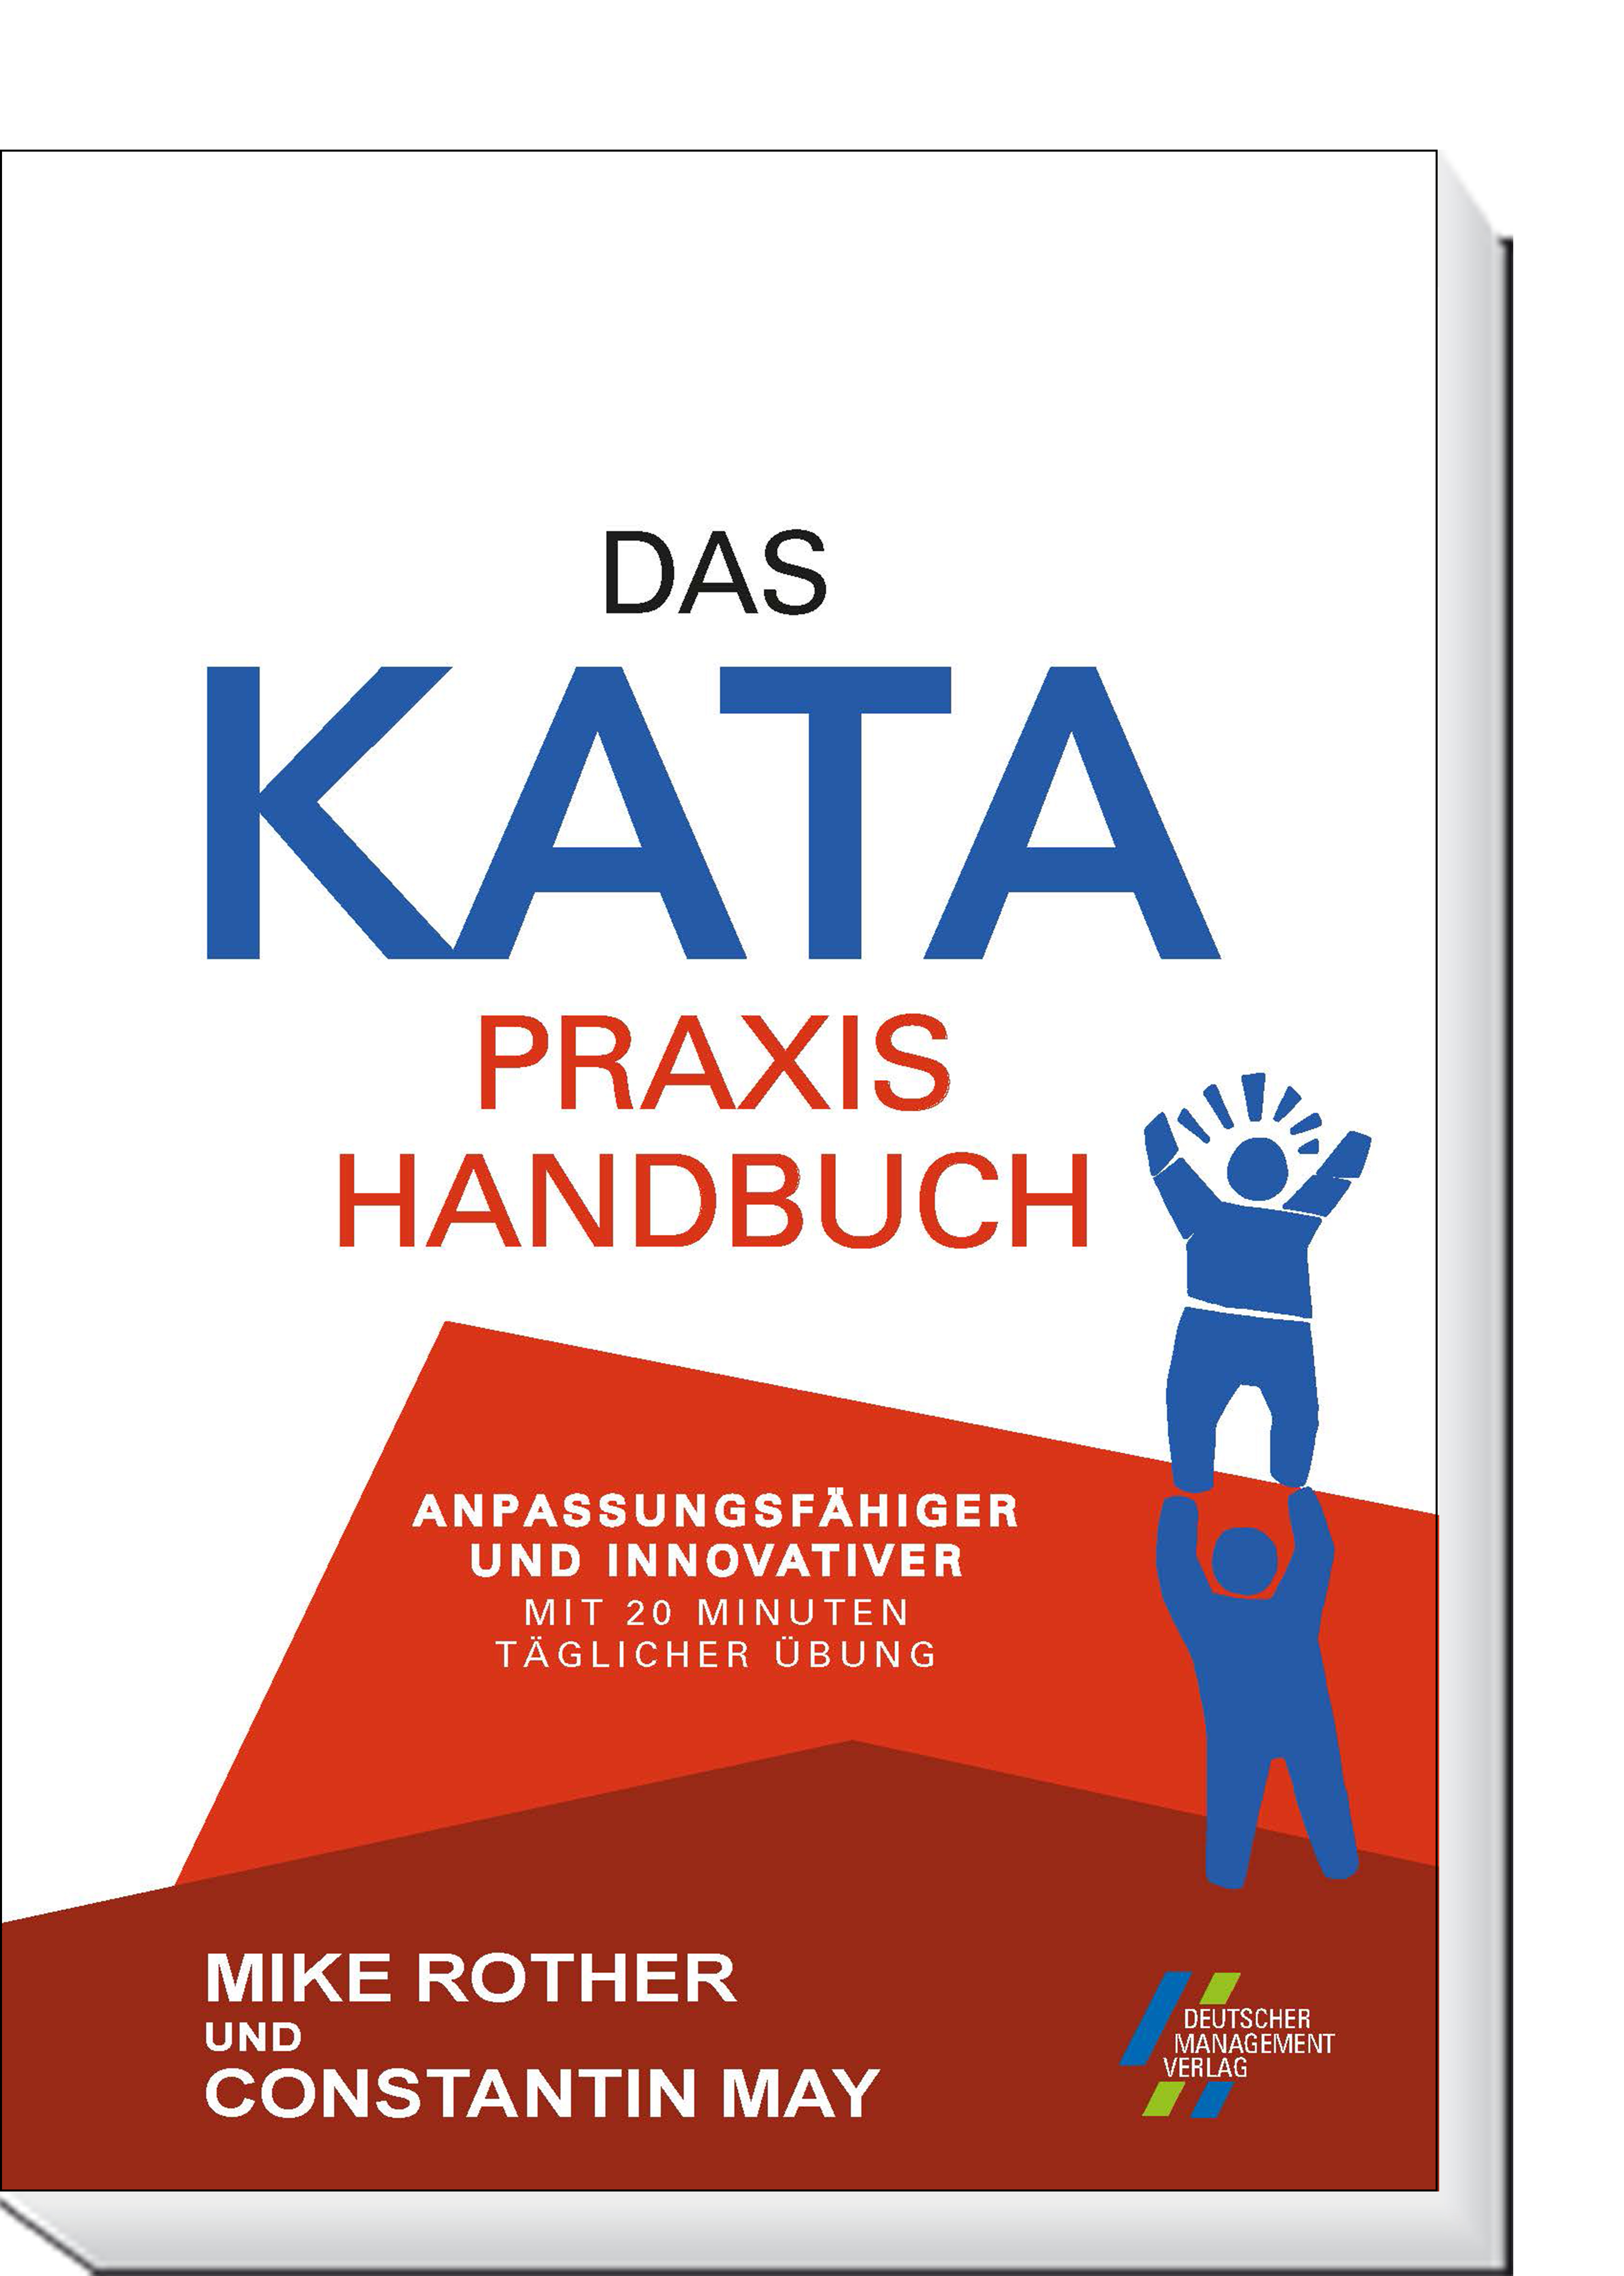 Das KATA Praxishandbuch | und Anpassungsfähiger innovativer Übung CETPM | mit täglicher 20 Minuten